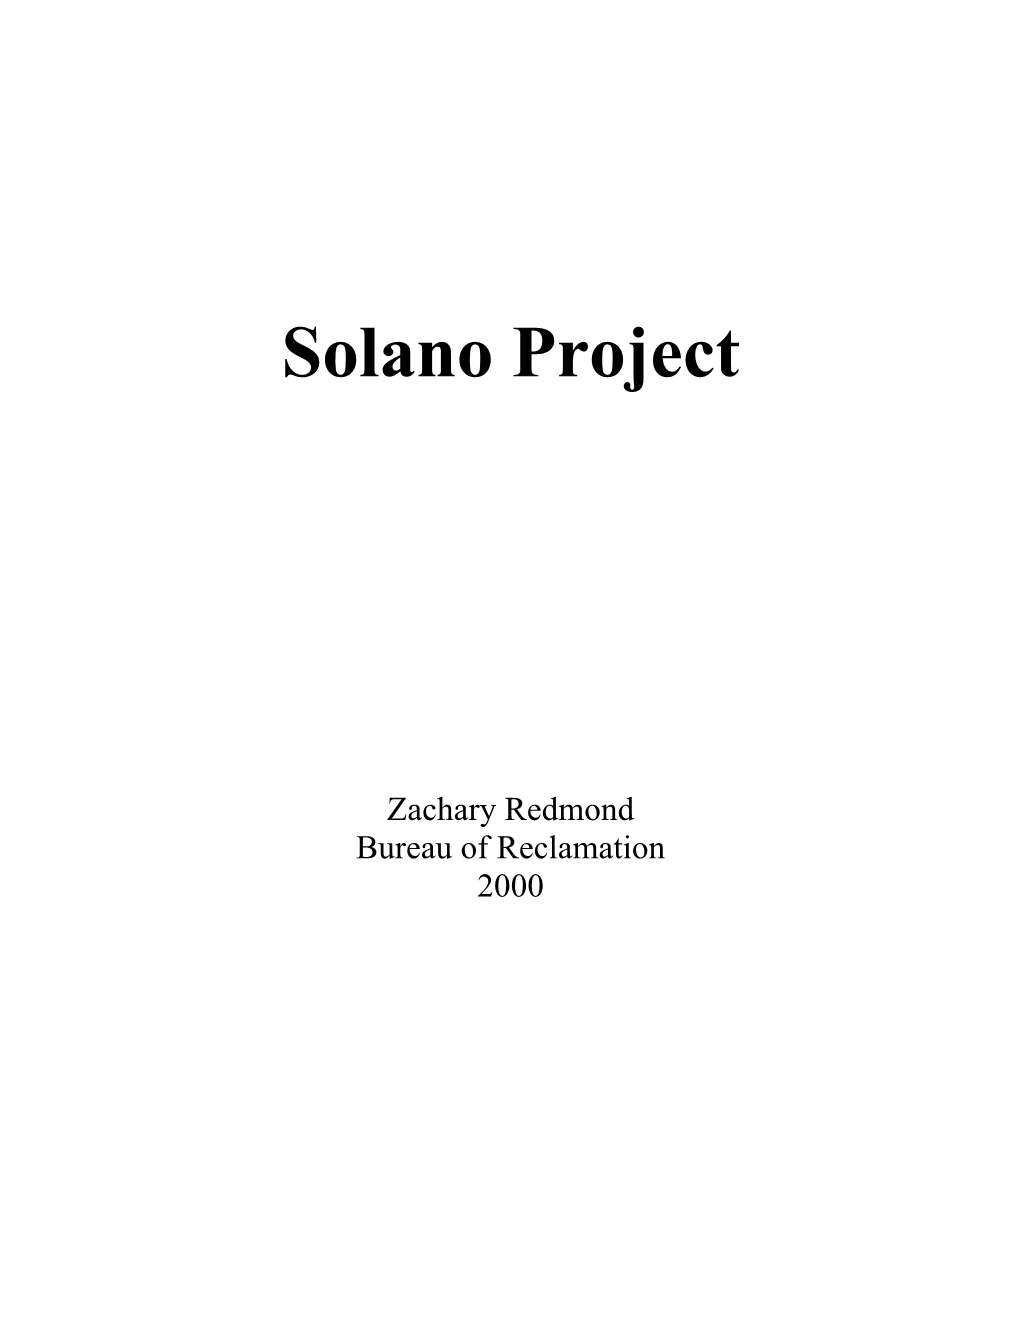 Solano Project History